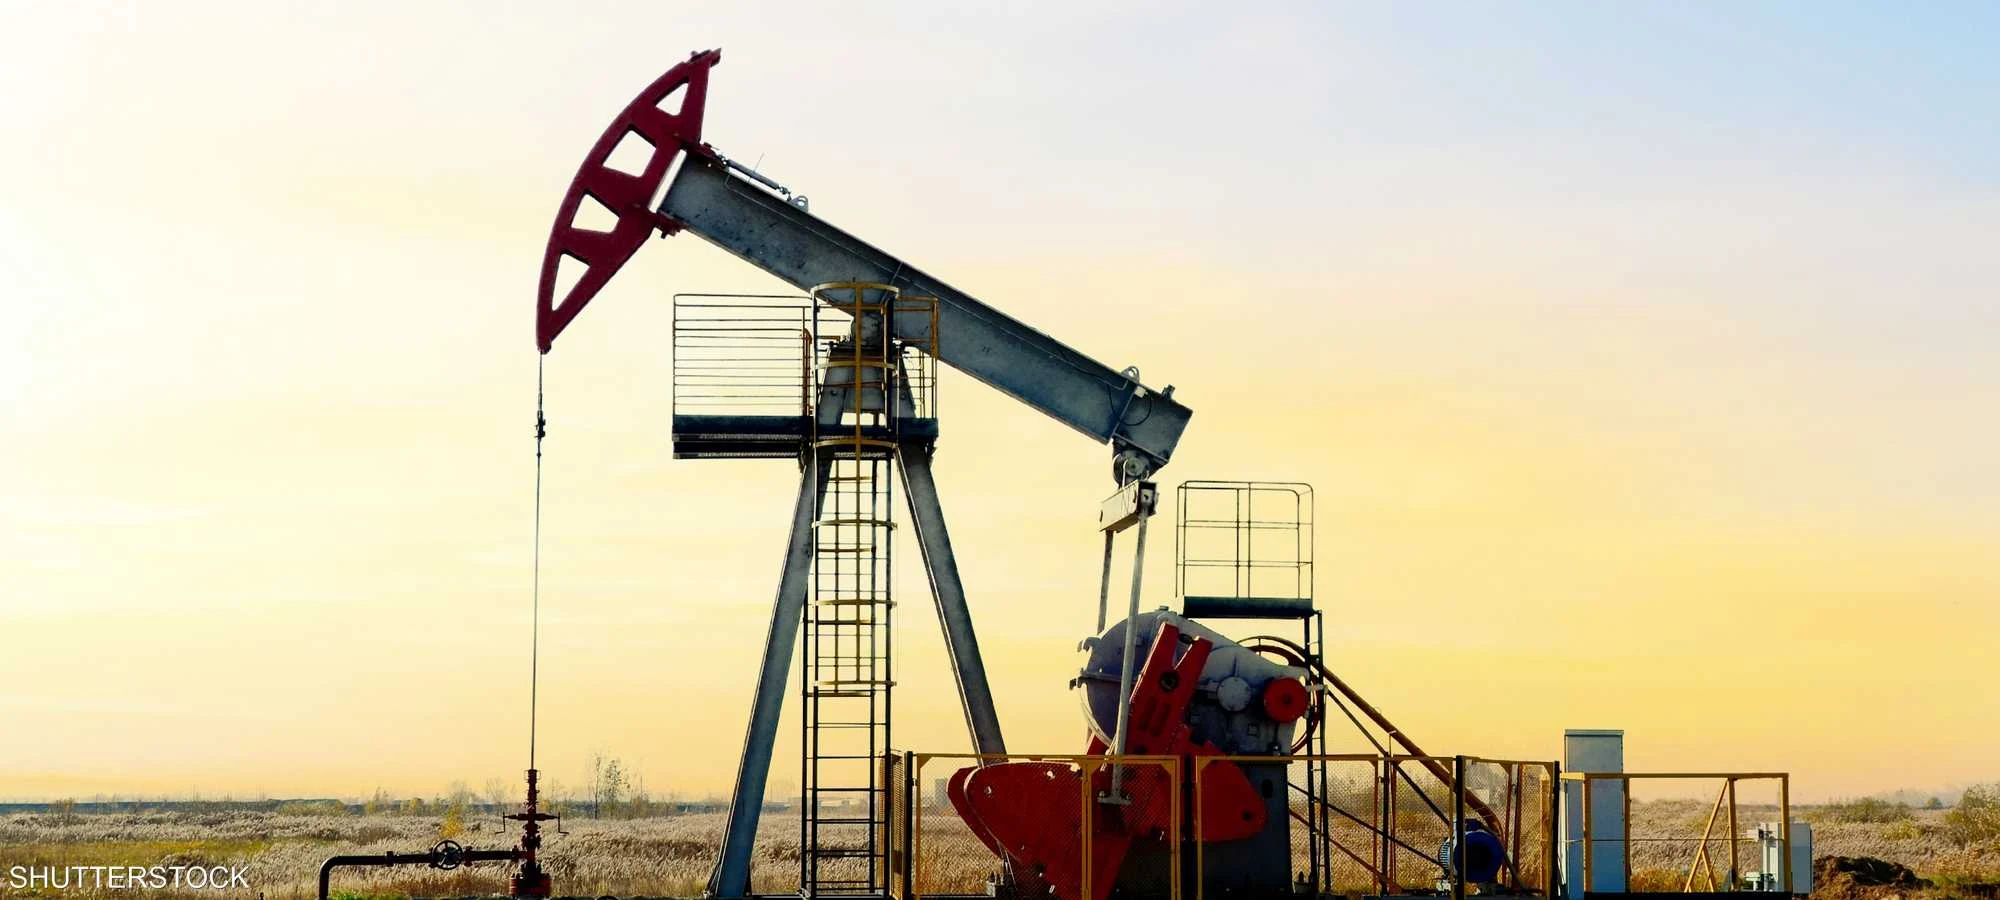 تصاعد الصراع في الشرق الأوسط يهدد بارتفاع أسعار النفط إلى 157 دولاراً للبرميل